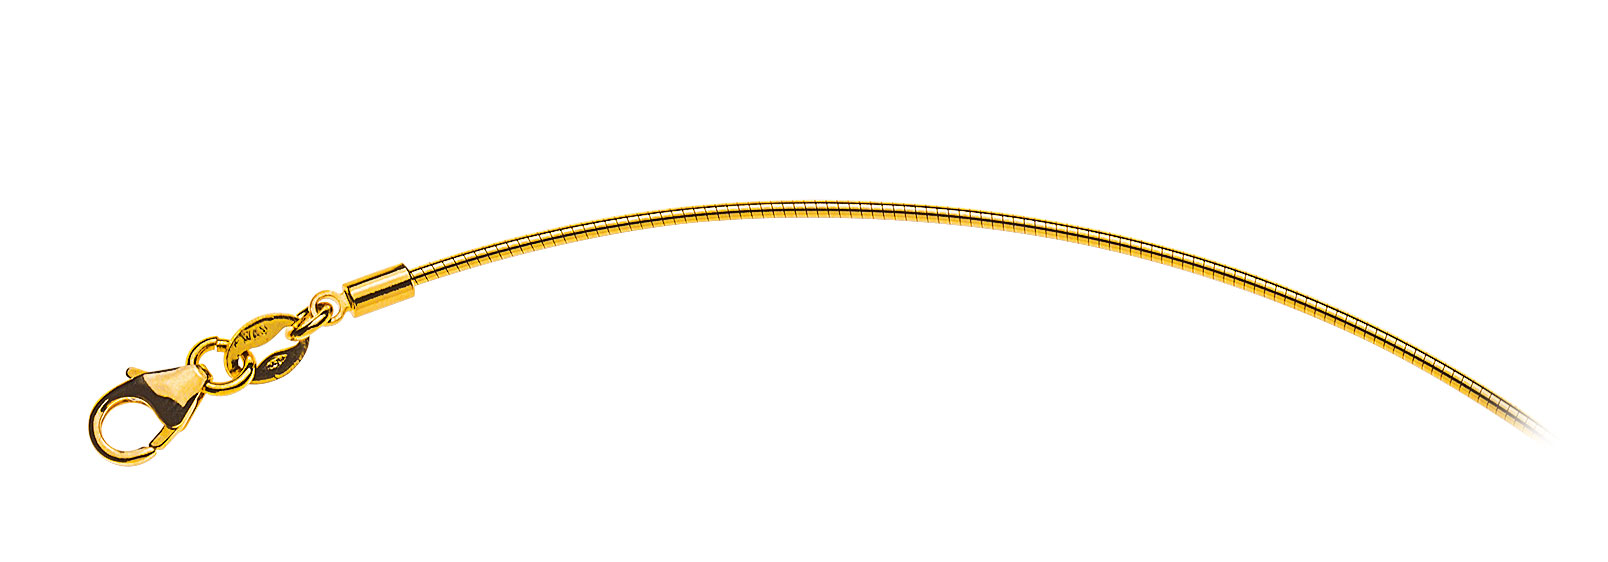 AURONOS Prestige Halskette Gelbgold 18K Omegakette 50cm 1.0mm